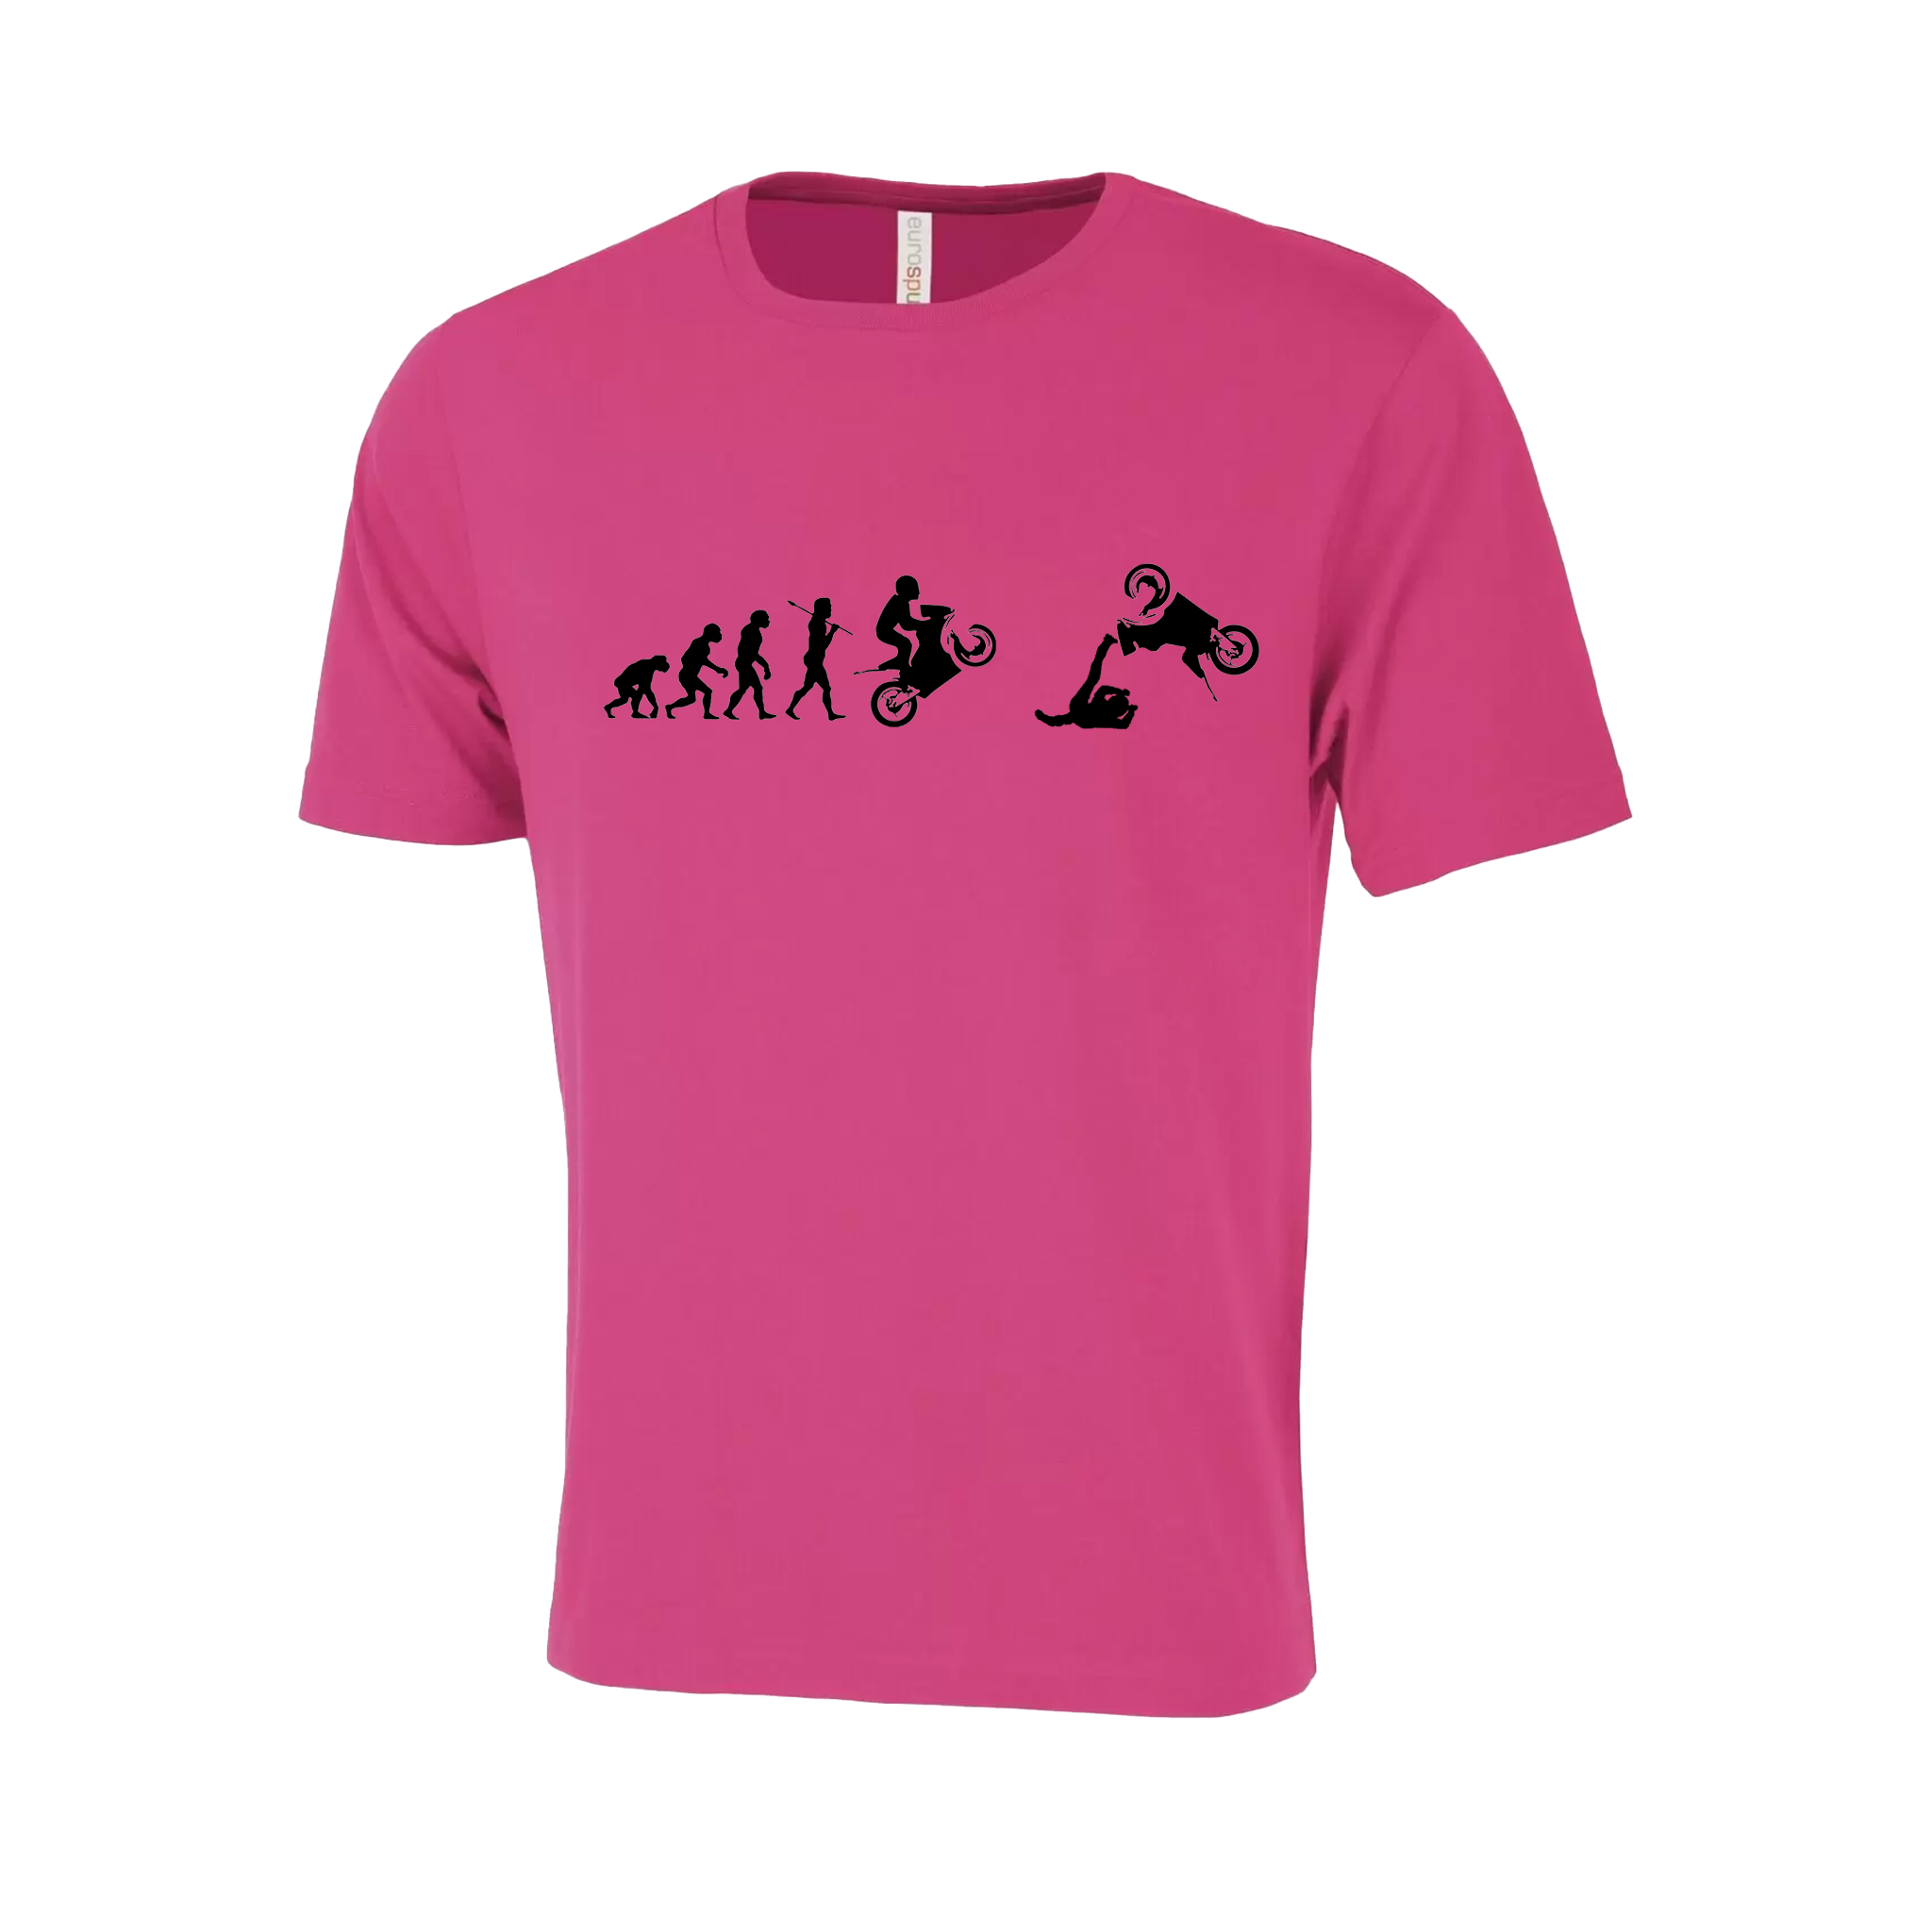 Motorcycle Crash Evolution Novelty T-Shirt - Adult Unisex Sizing XS-4XL - Pink